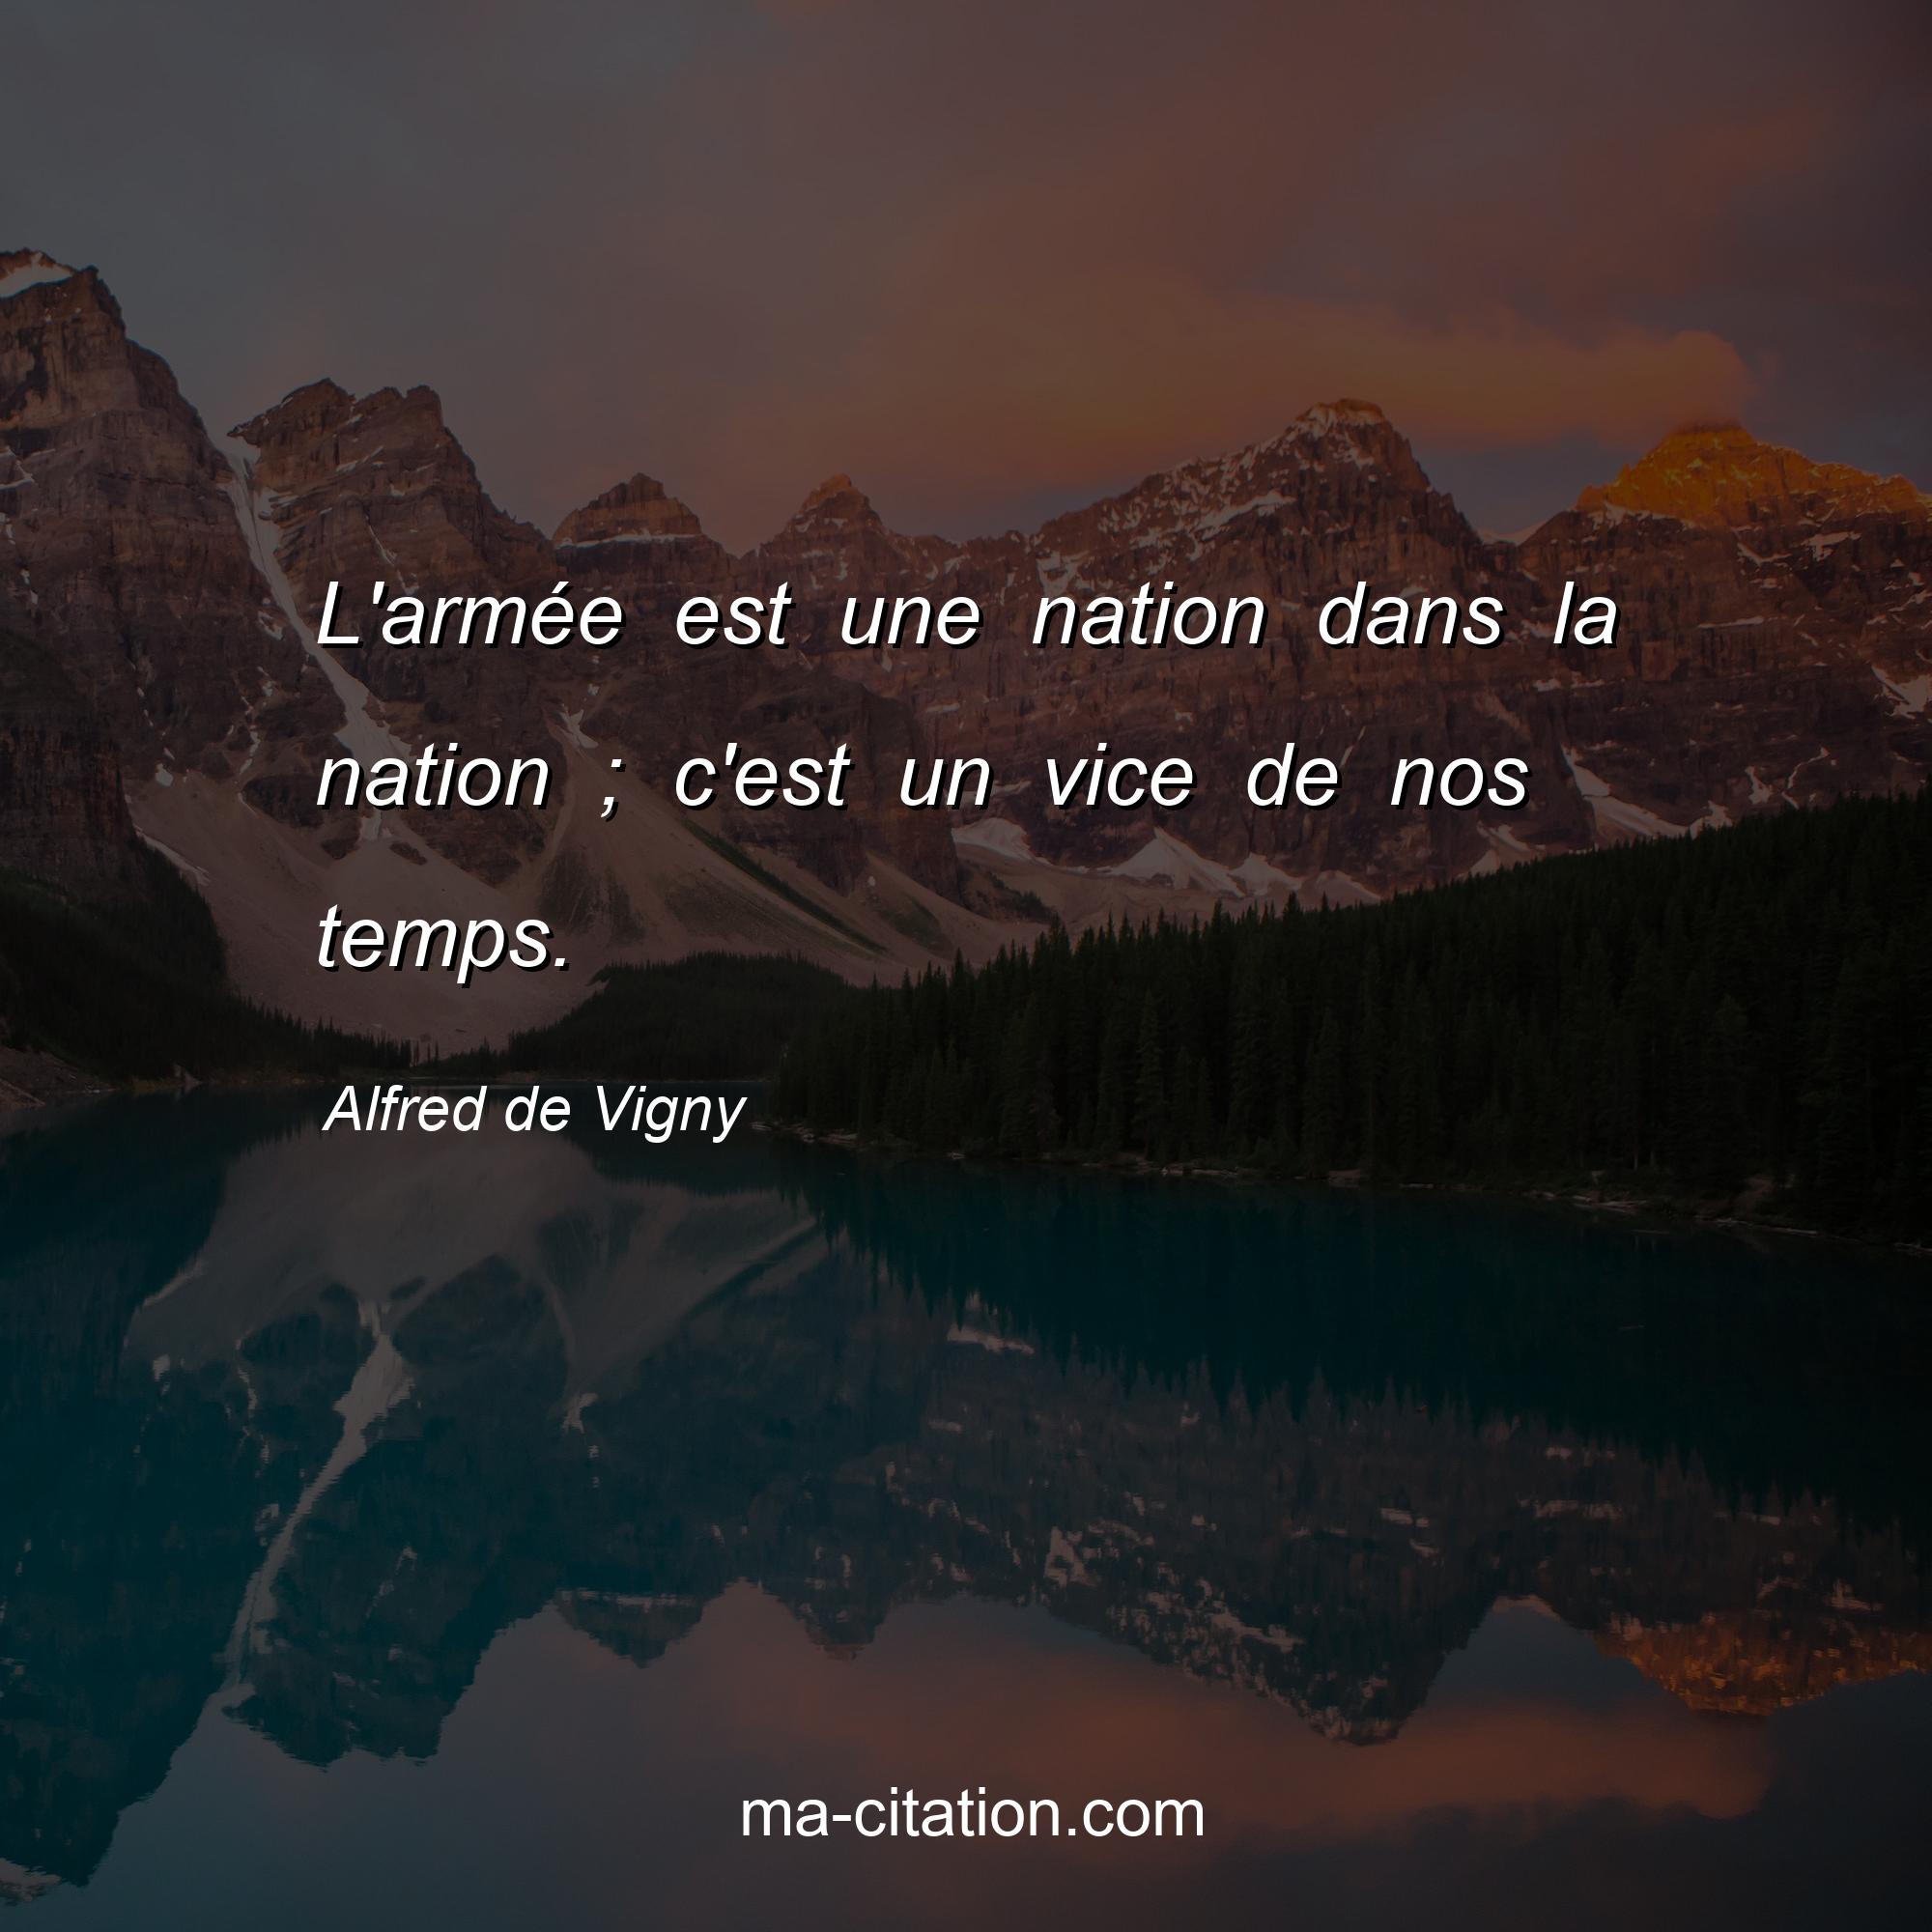 Alfred de Vigny : L'armée est une nation dans la nation ; c'est un vice de nos temps.